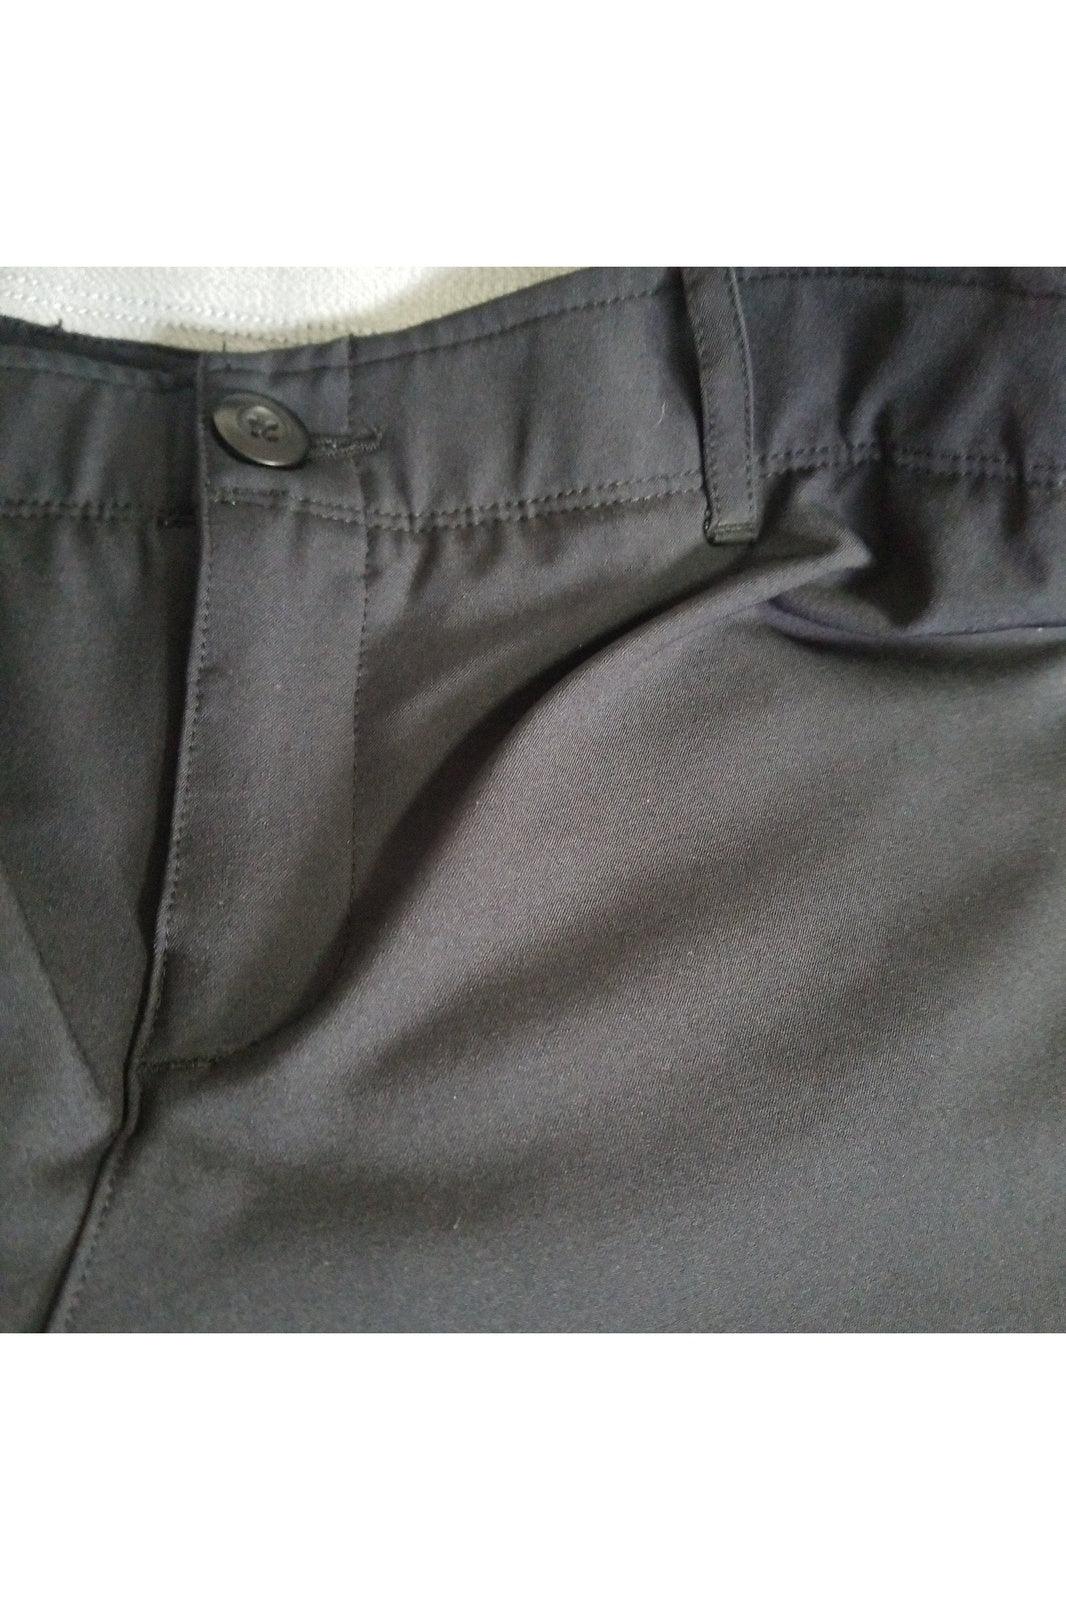 Under Armour women's black pants size 6